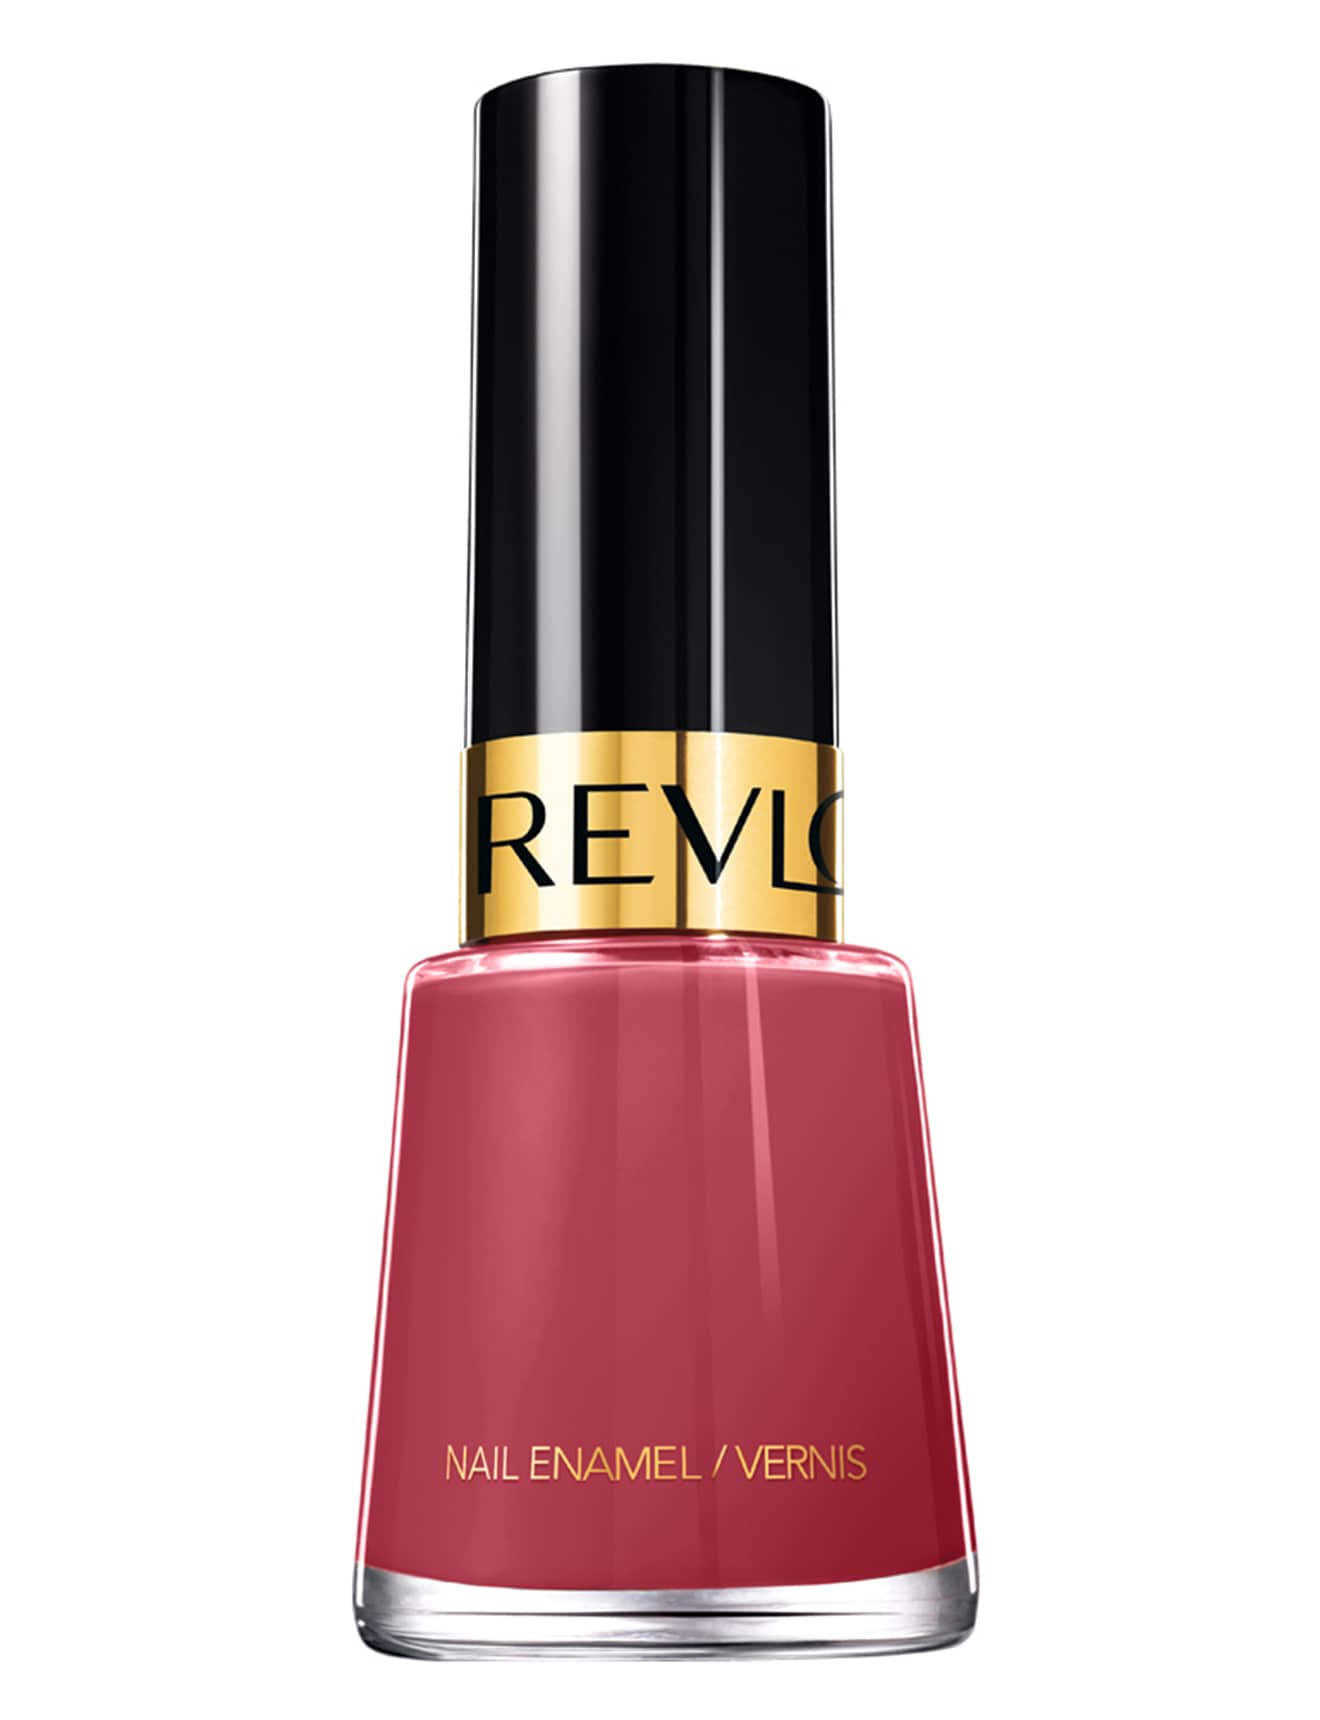 Revlon Nail Enamel - Teak Rose product photo